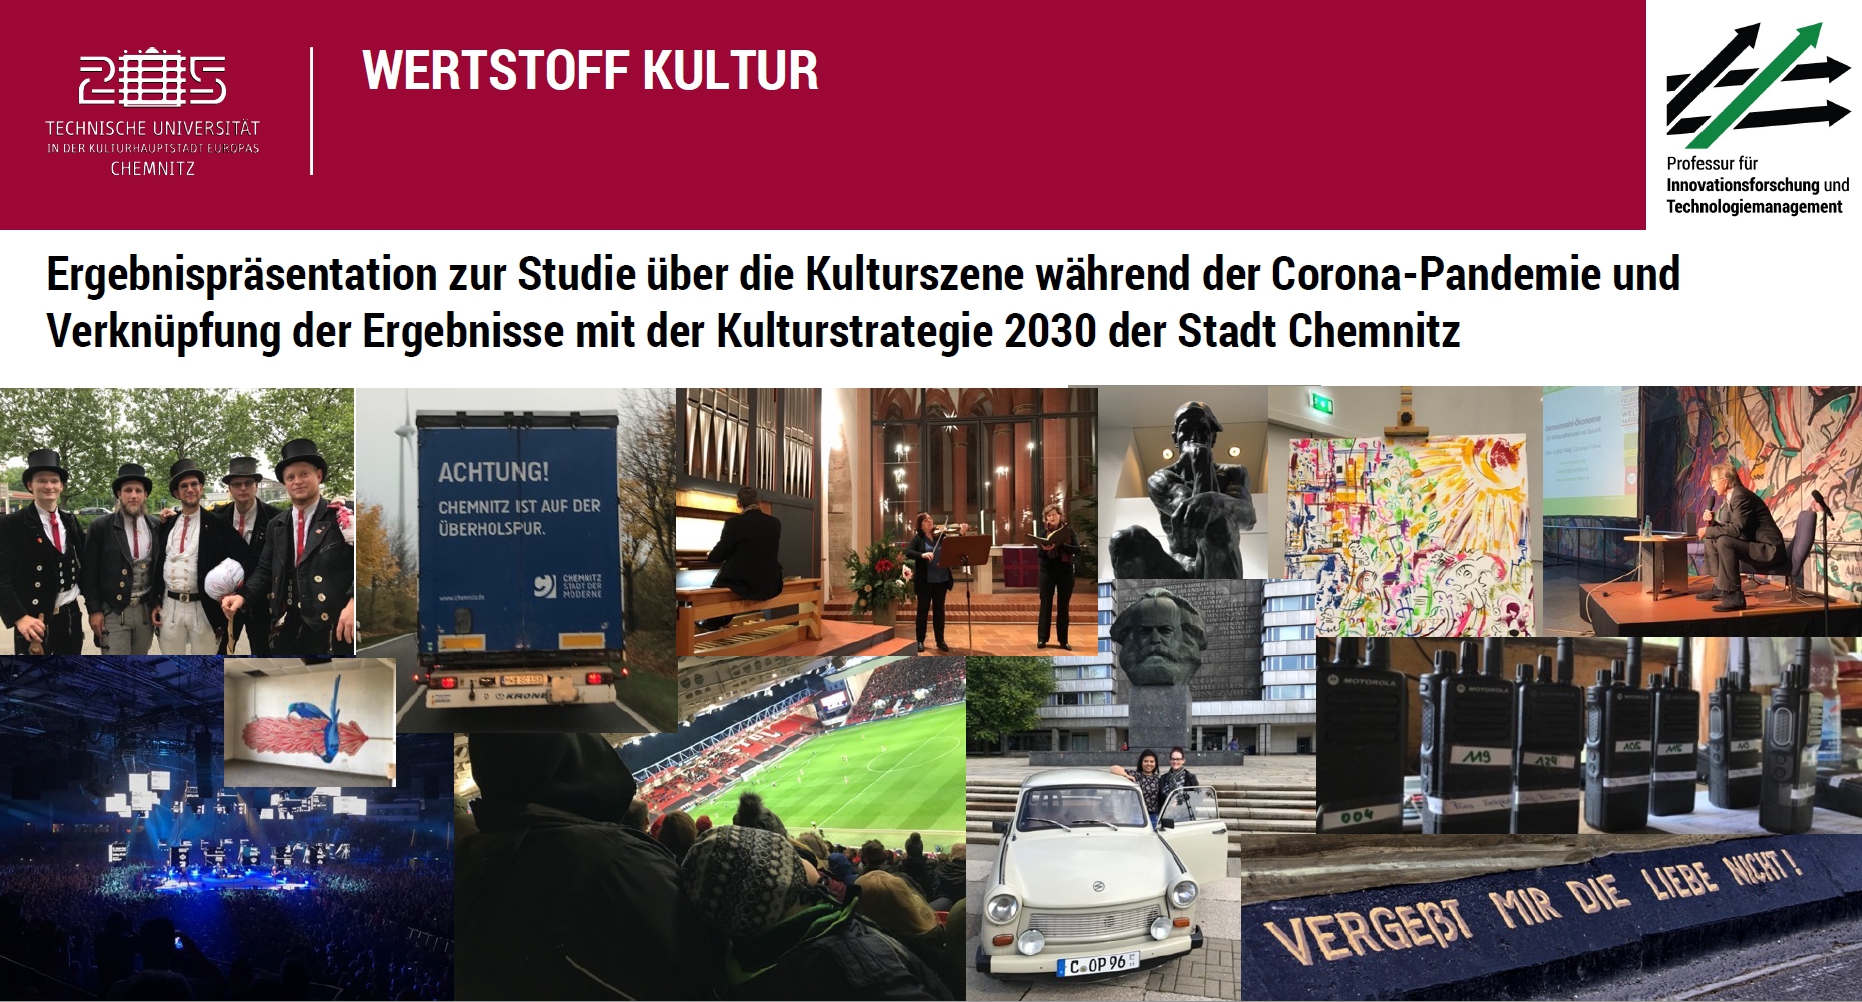 Ergebnispräsentation zur Studie über die Kulturszene während der Corona-Pandemie und Verknüpfung der Ergebnisse mit der Kulturstrategie 2030 der Stadt Chemnitz